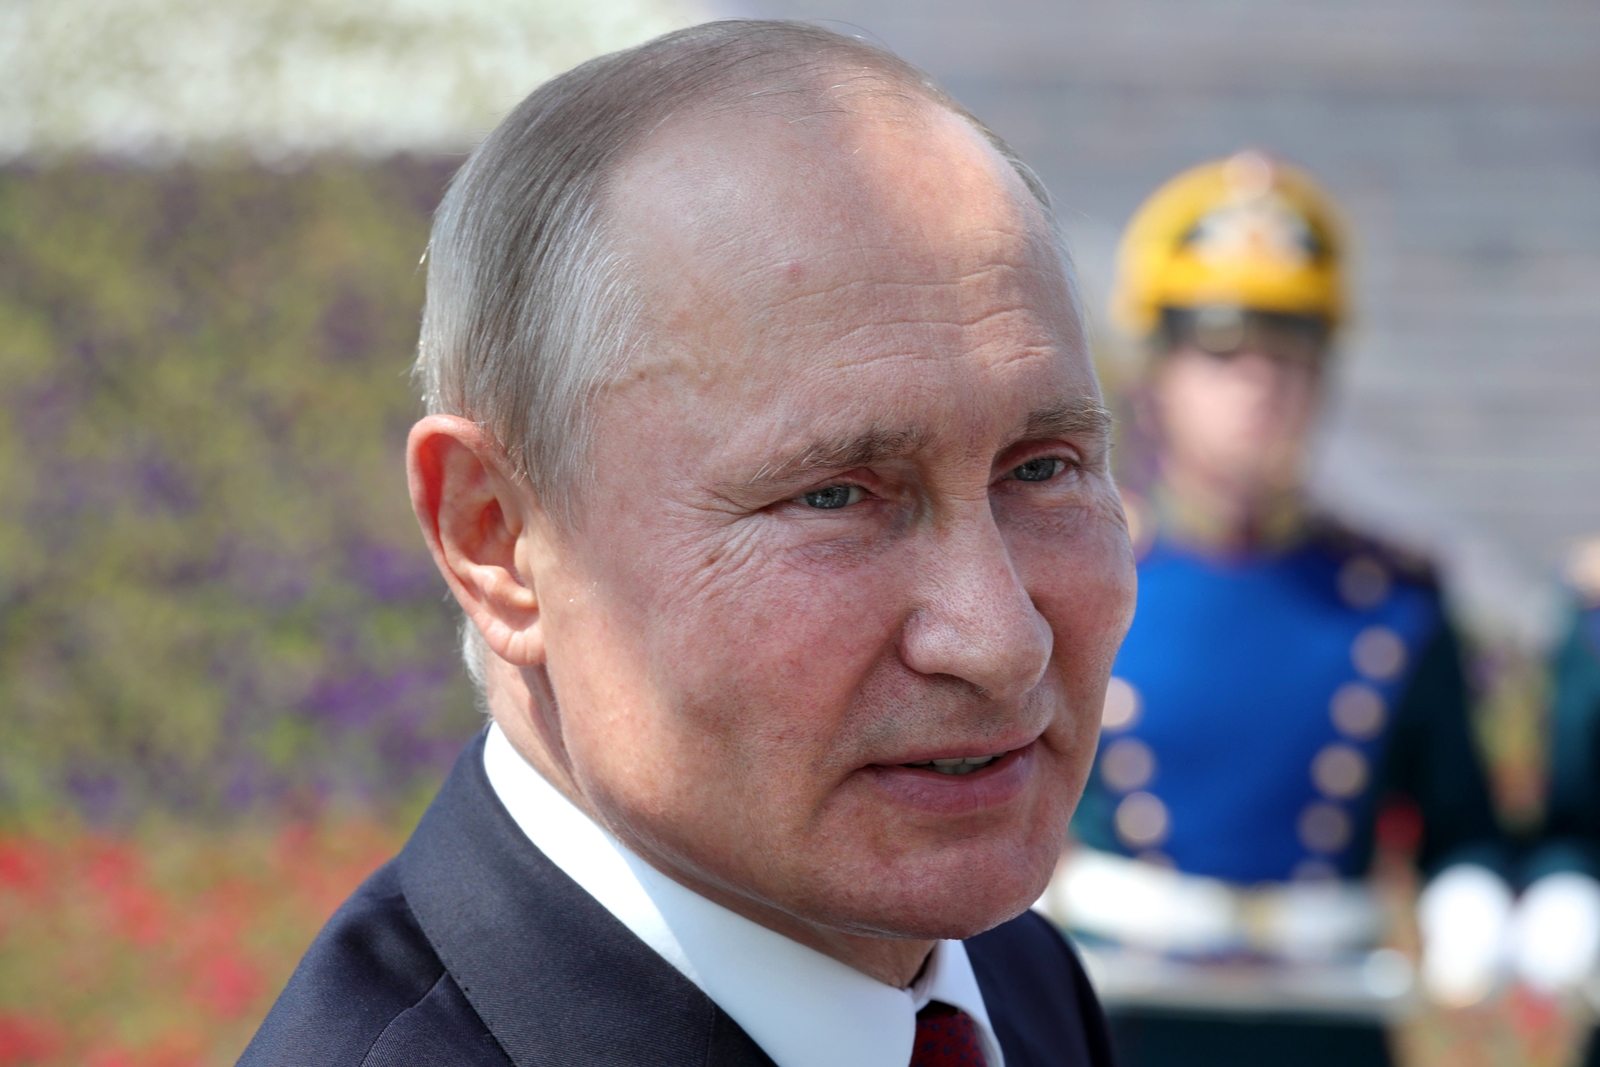 Путин заявил, что ФСБ нужно оказывать поддержку компаниям под санкциями